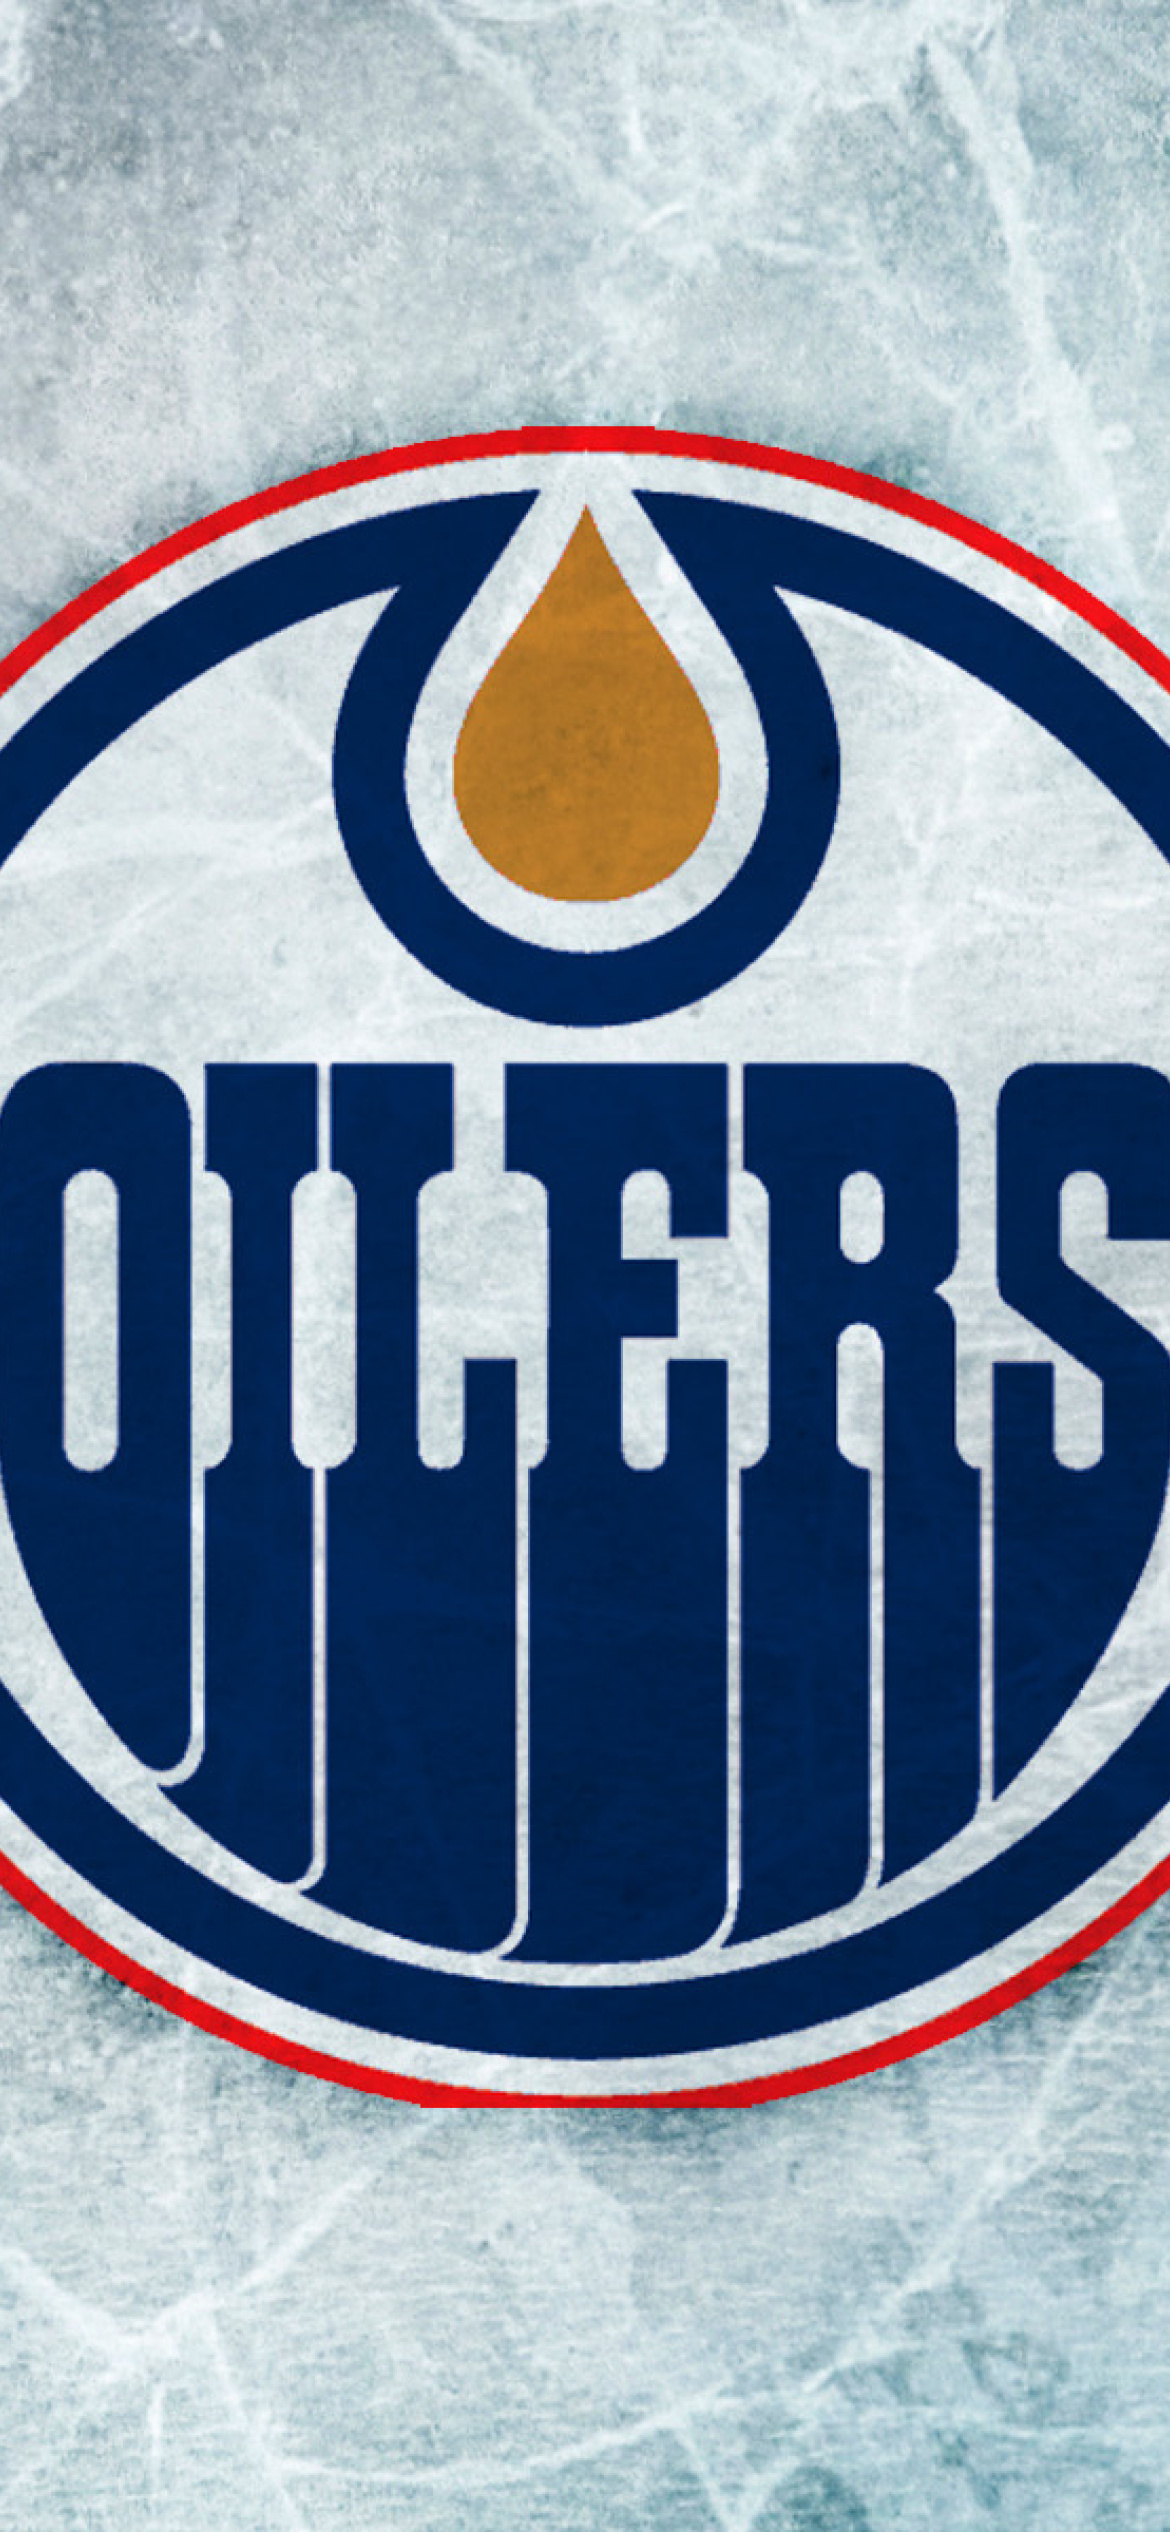 Edmonton Oilers screenshot #1 1170x2532